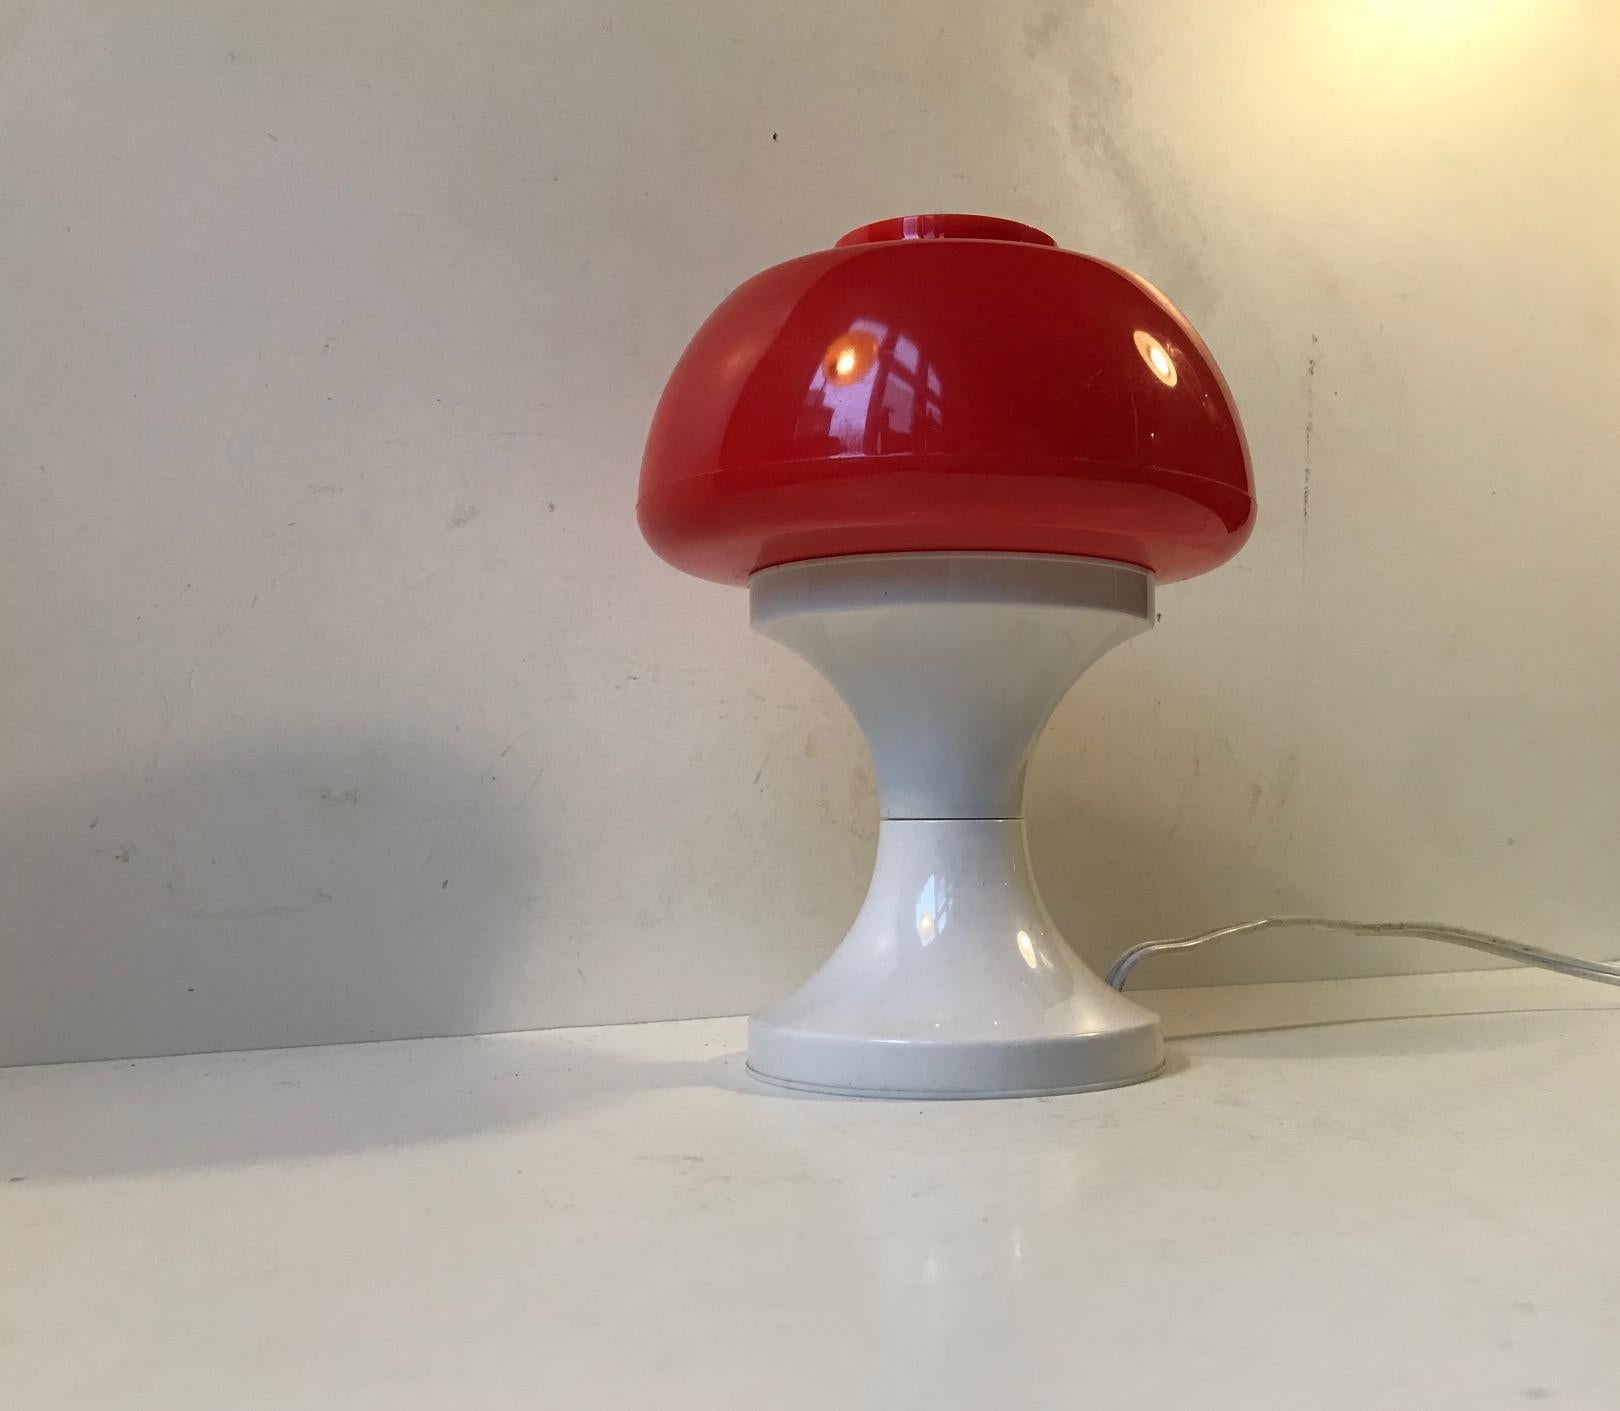 Petite lampe de table en forme de champignon fabriquée en acrylique blanc et rouge brillant. Fabriqué par A. Schrøder au Danemark dans les années 1970. Certains pensent qu'il est de Bent Karlby, mais il n'est pas catalogué. Ce style de petites